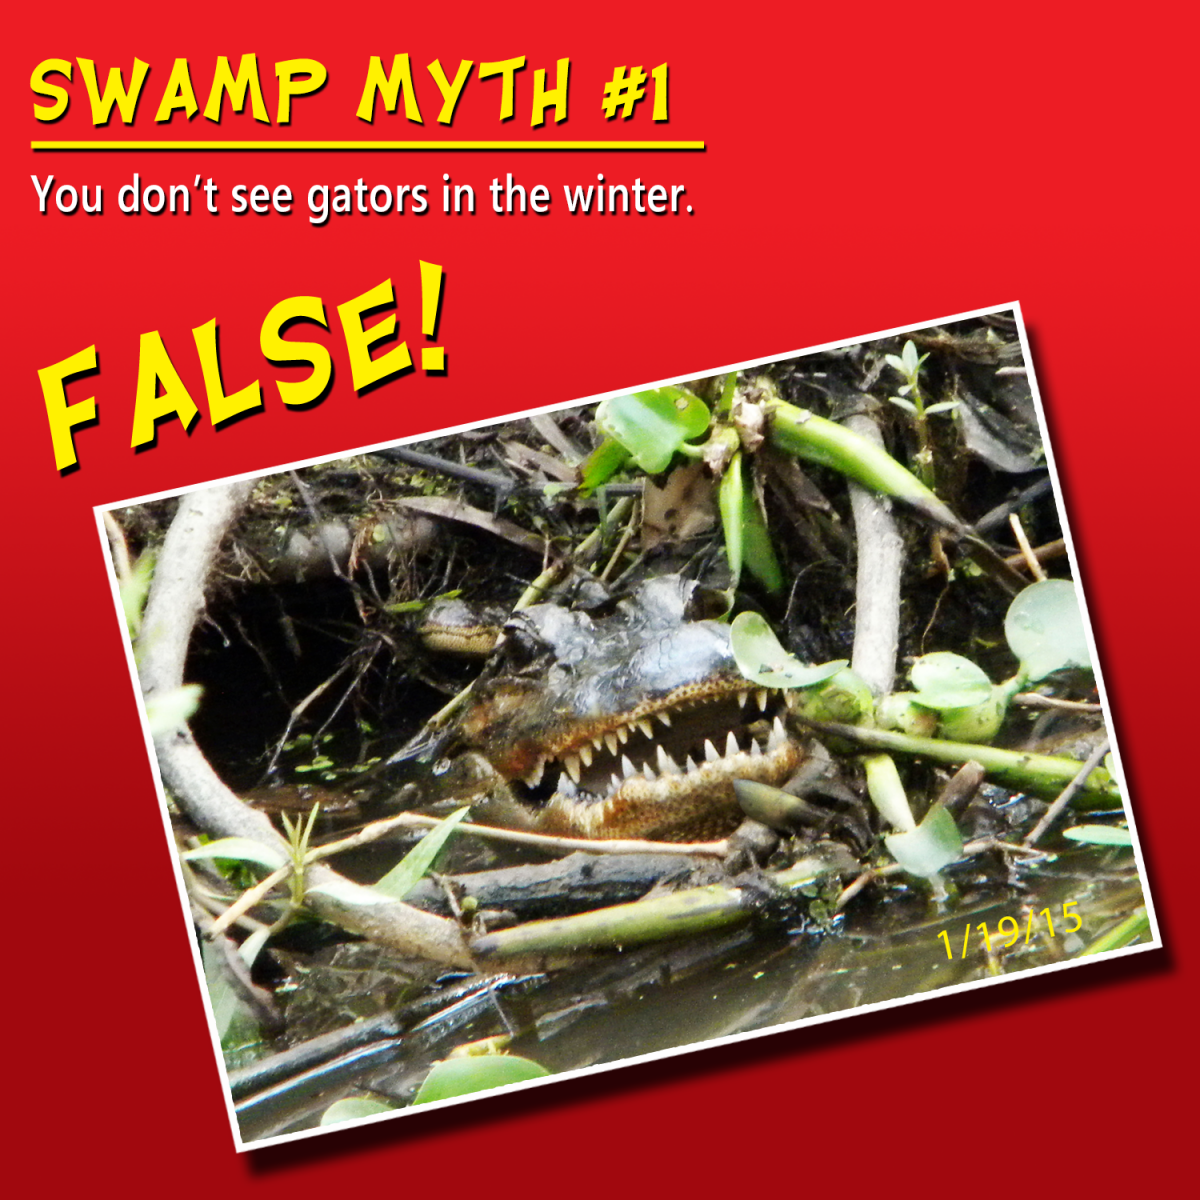 swamp myth 